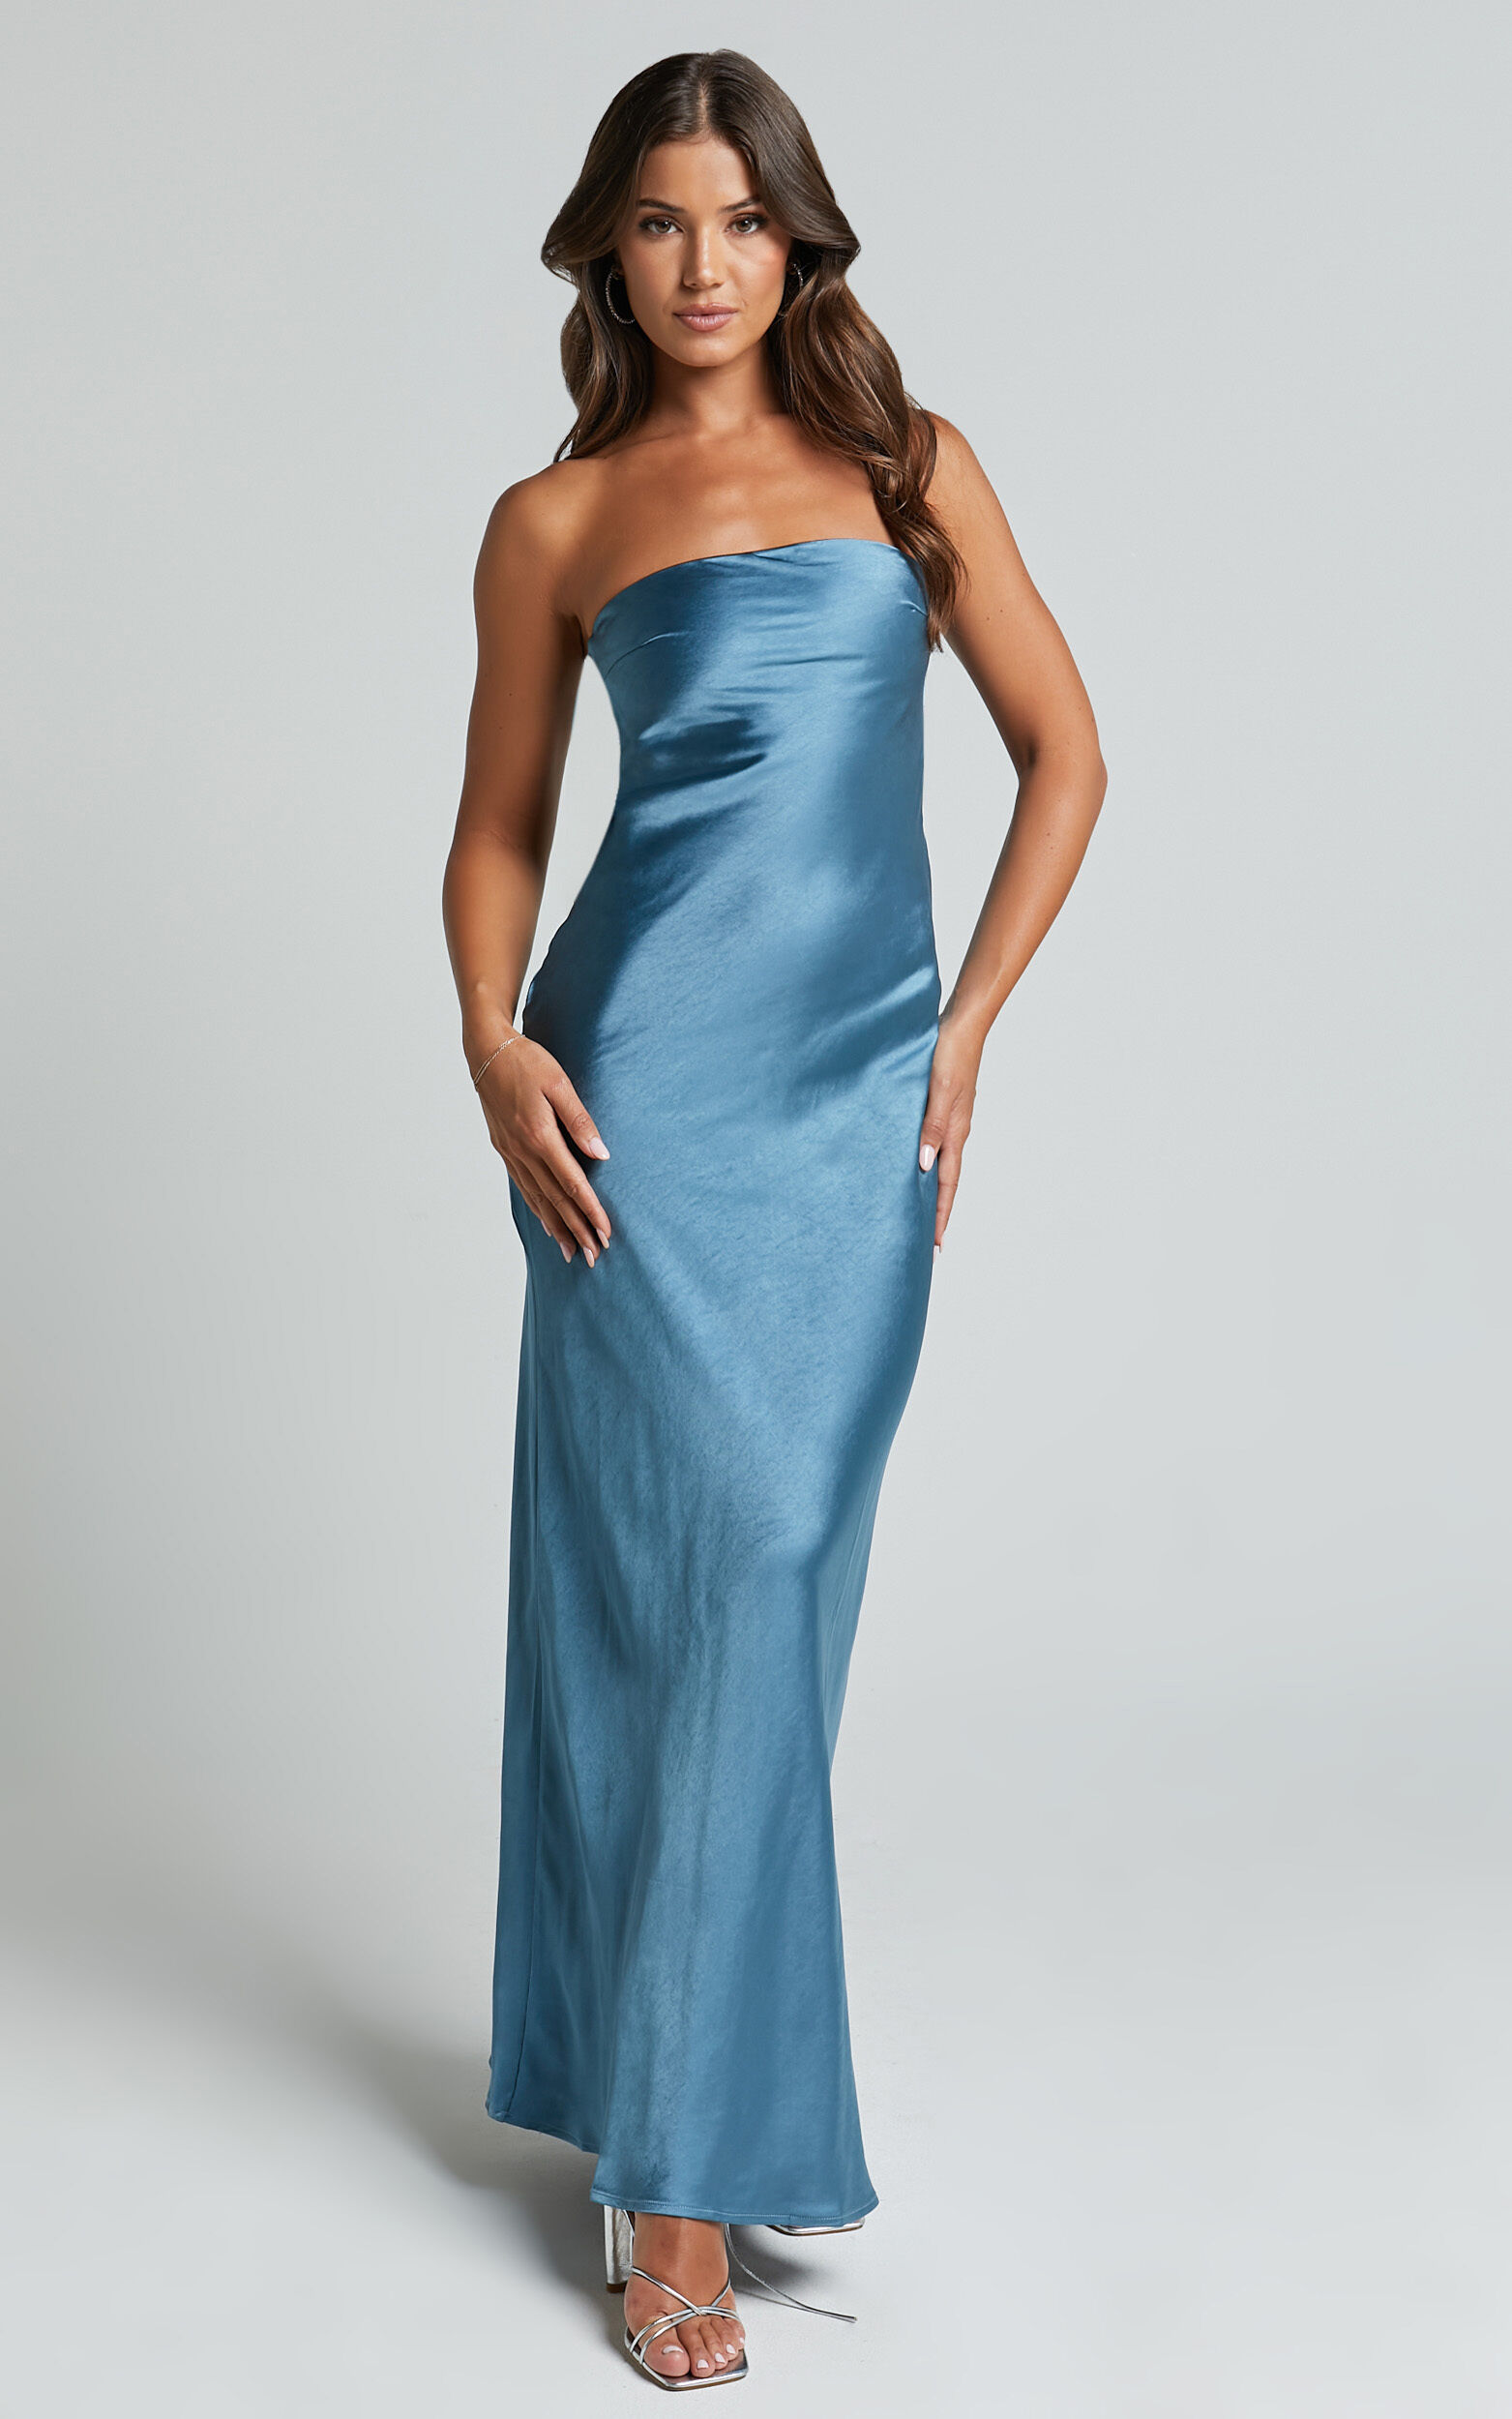 Charlita Maxi Dress - Strapless Cowl Back Satin Dress in Steel Blue - 06, BLU9